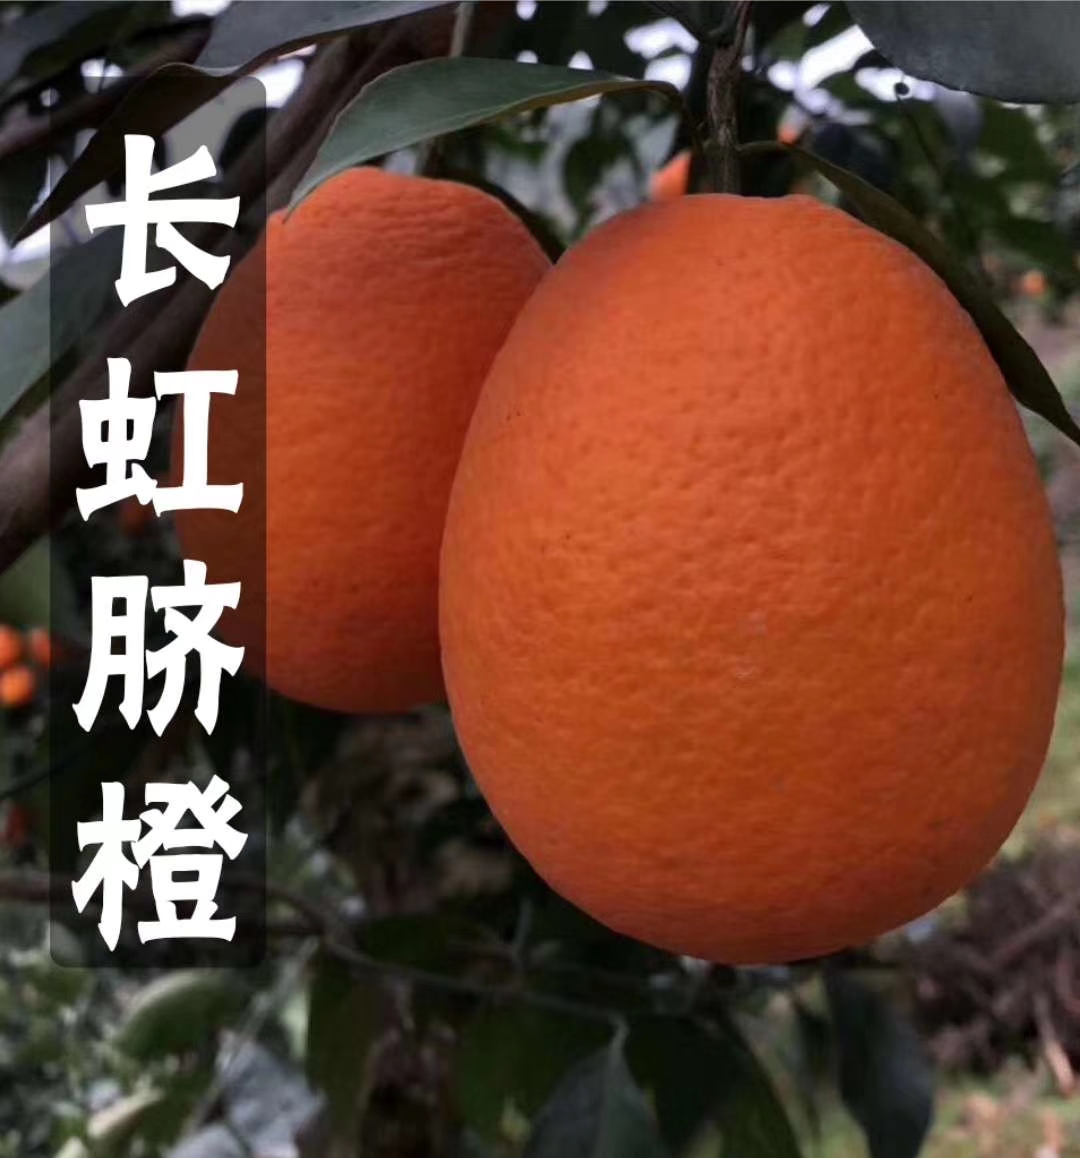 秭归县《爆款》纯甜长虹橙 可视频看货 果型椭圆形 火红色 水分爆汁